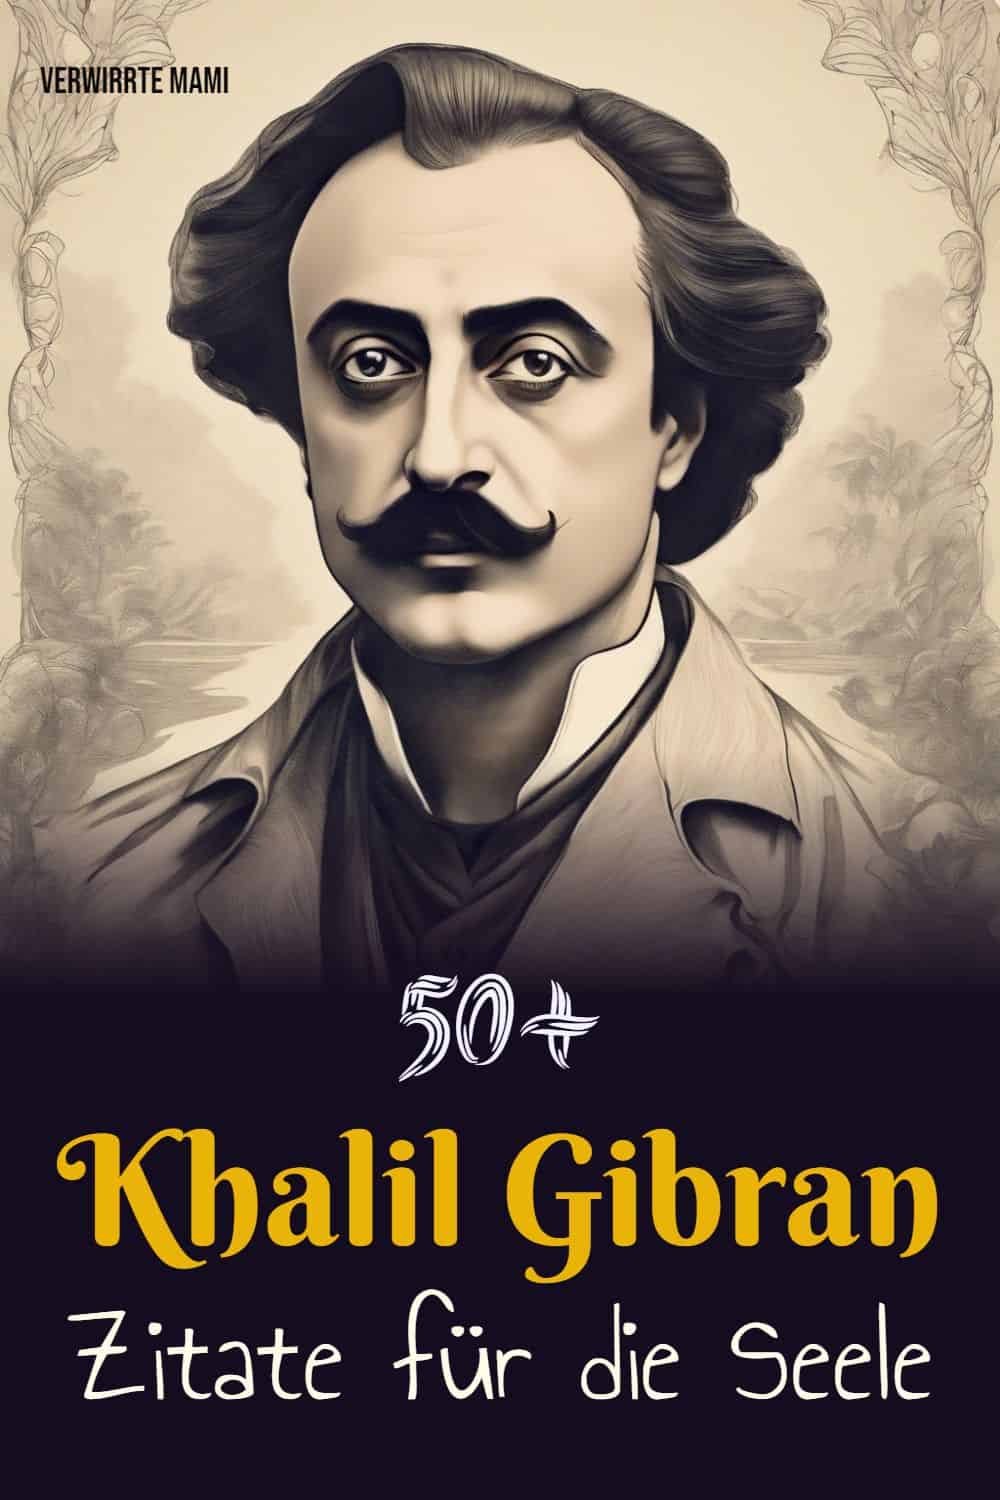 50+ Zitate für die Seele Khalil Gibran